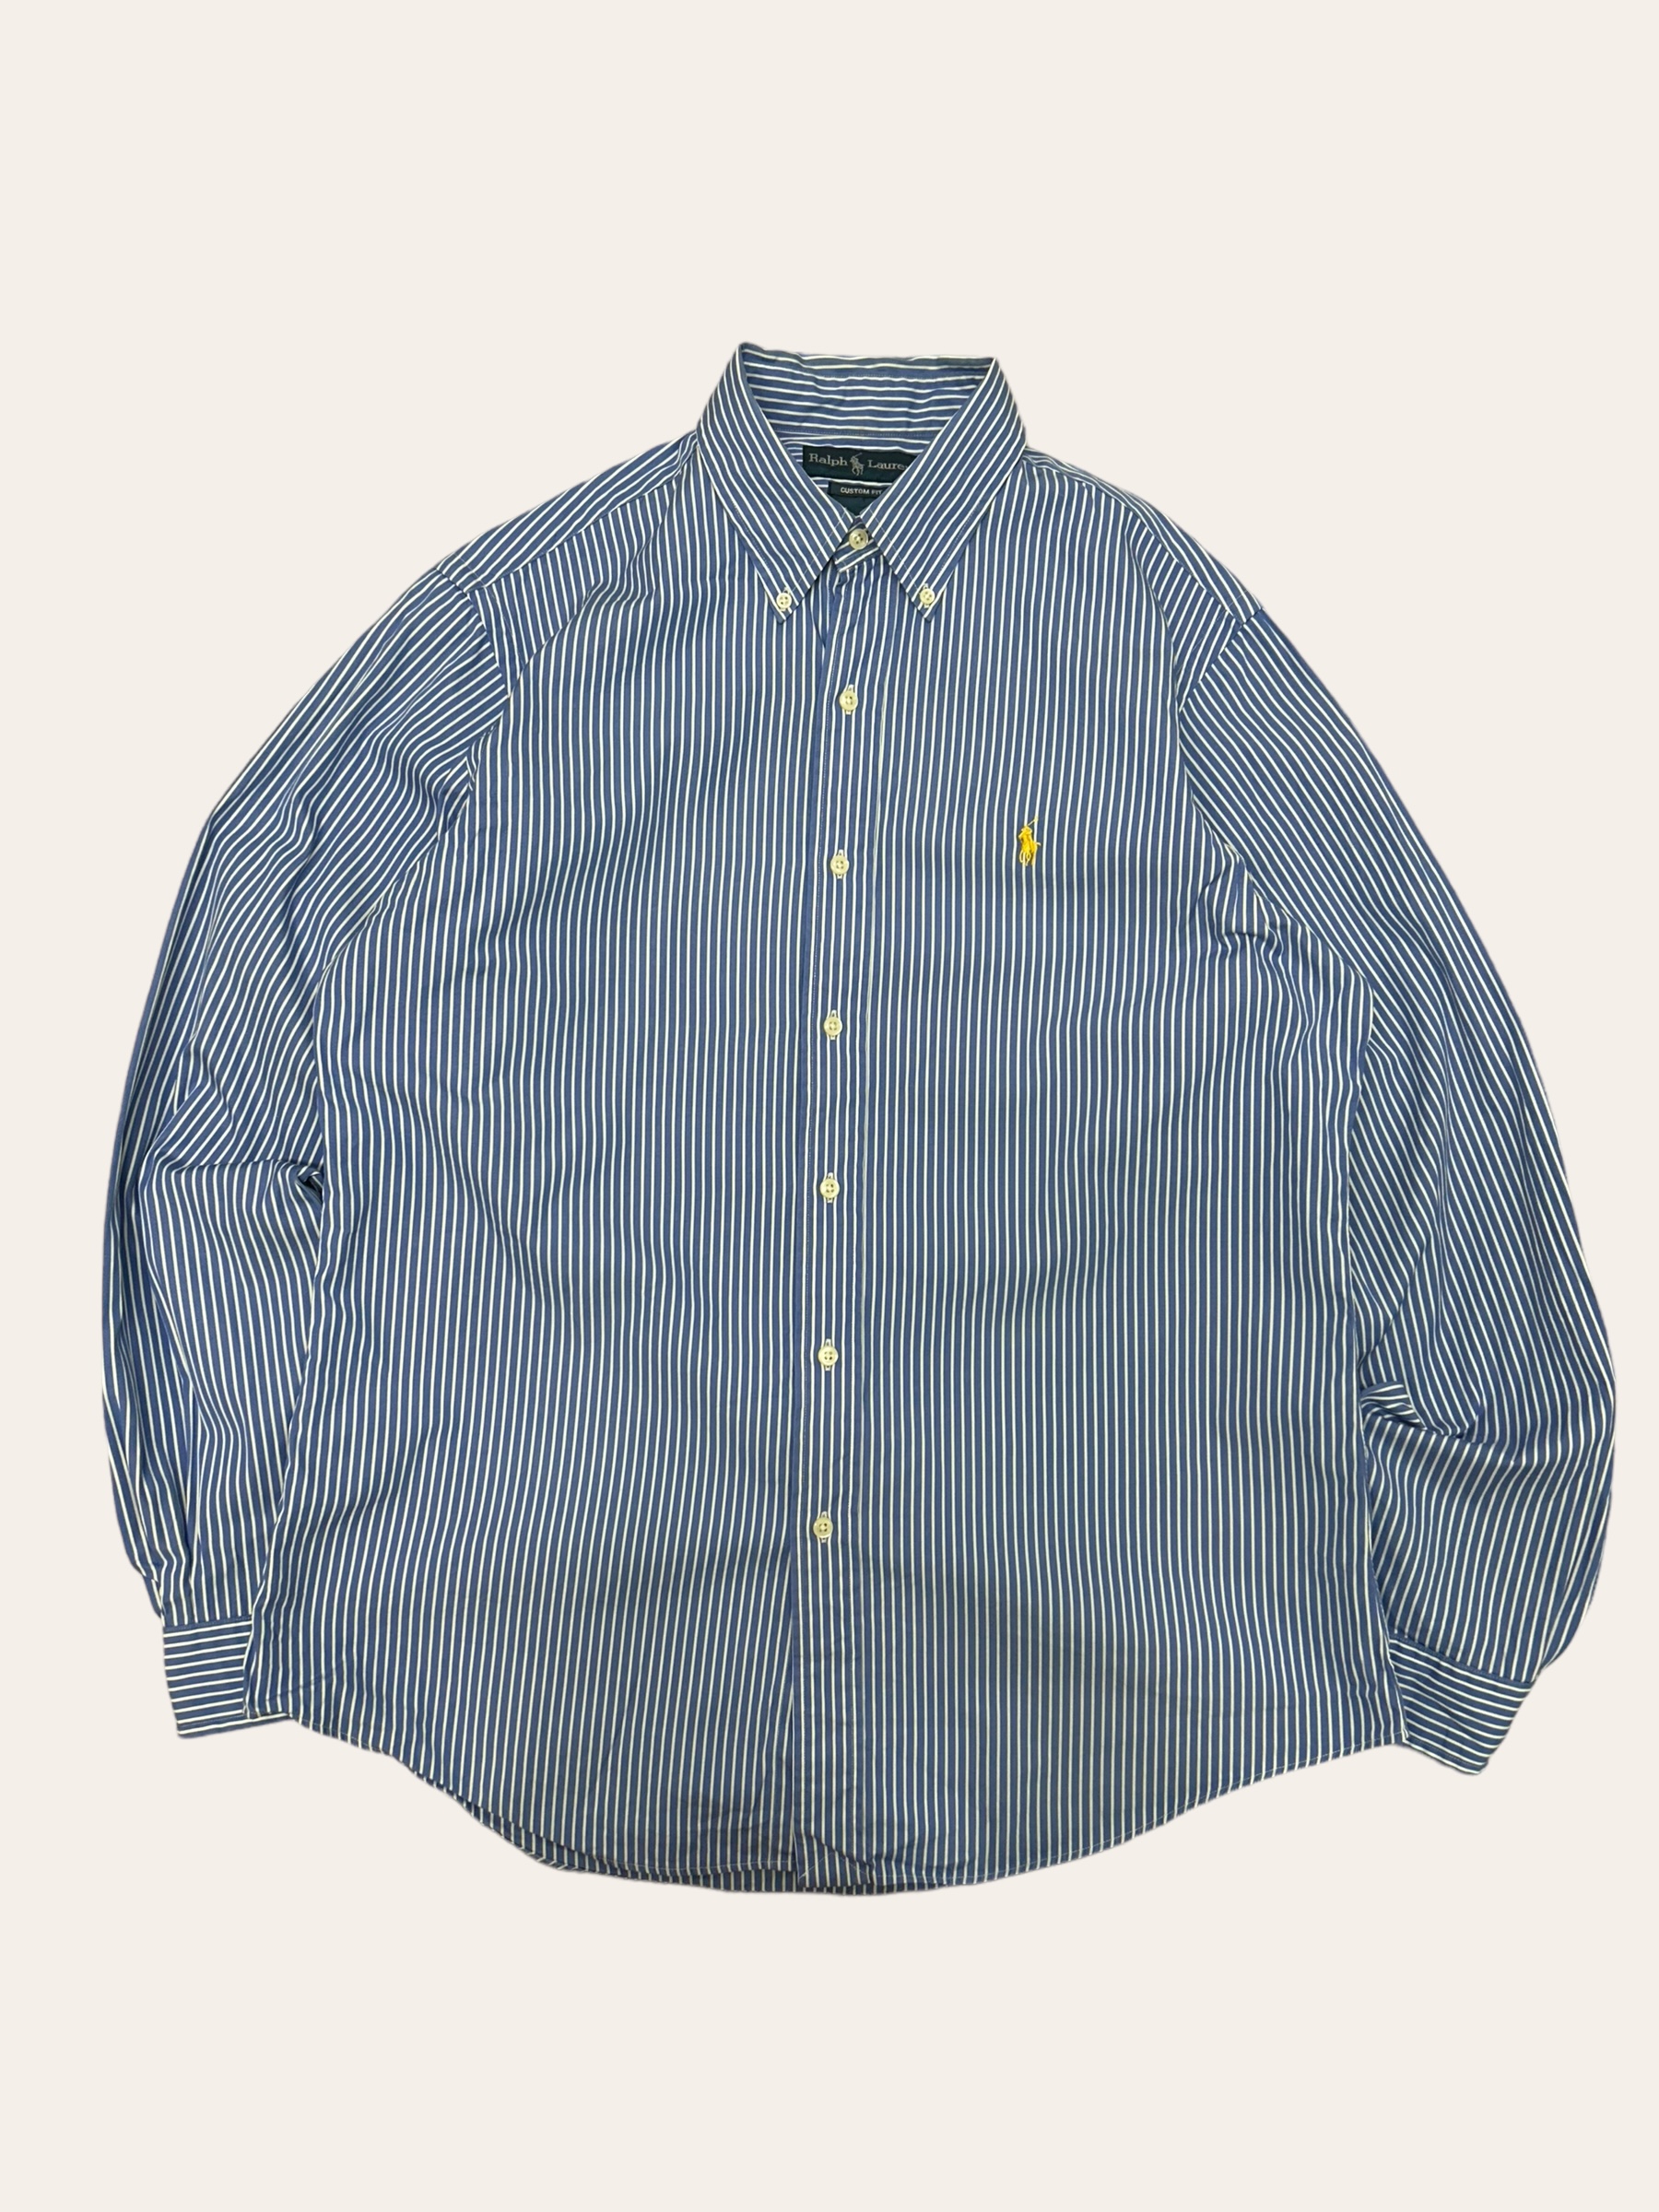 (From USA)Polo ralph lauren blue stripe shirt L